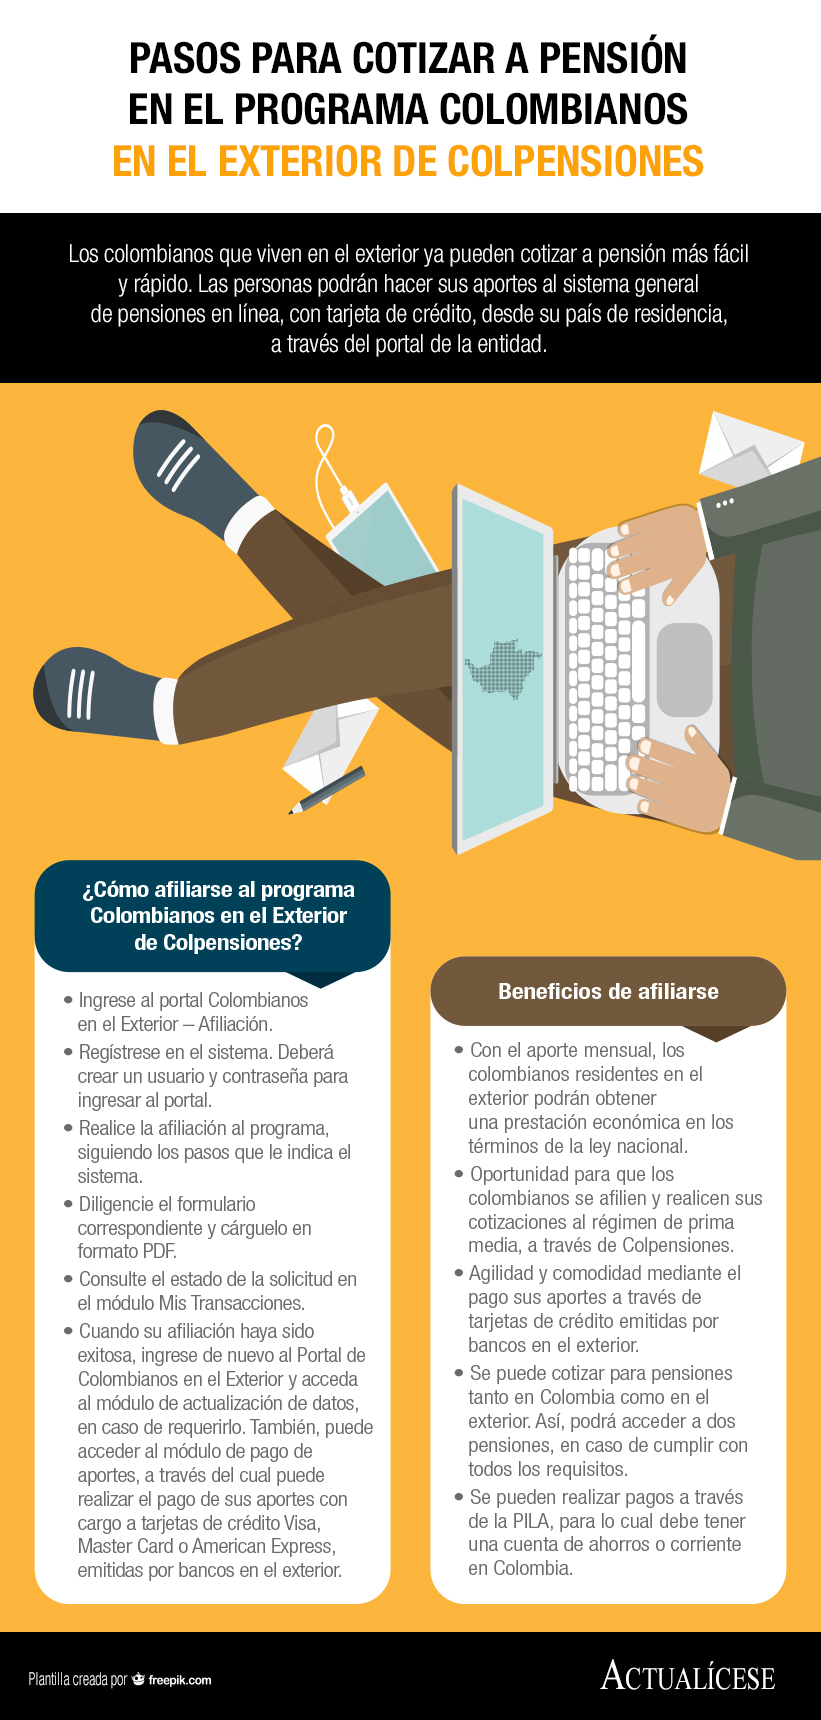 [Infografía] Pasos para cotizar a pensión en el programa Colombianos en el Exterior de Colpensiones